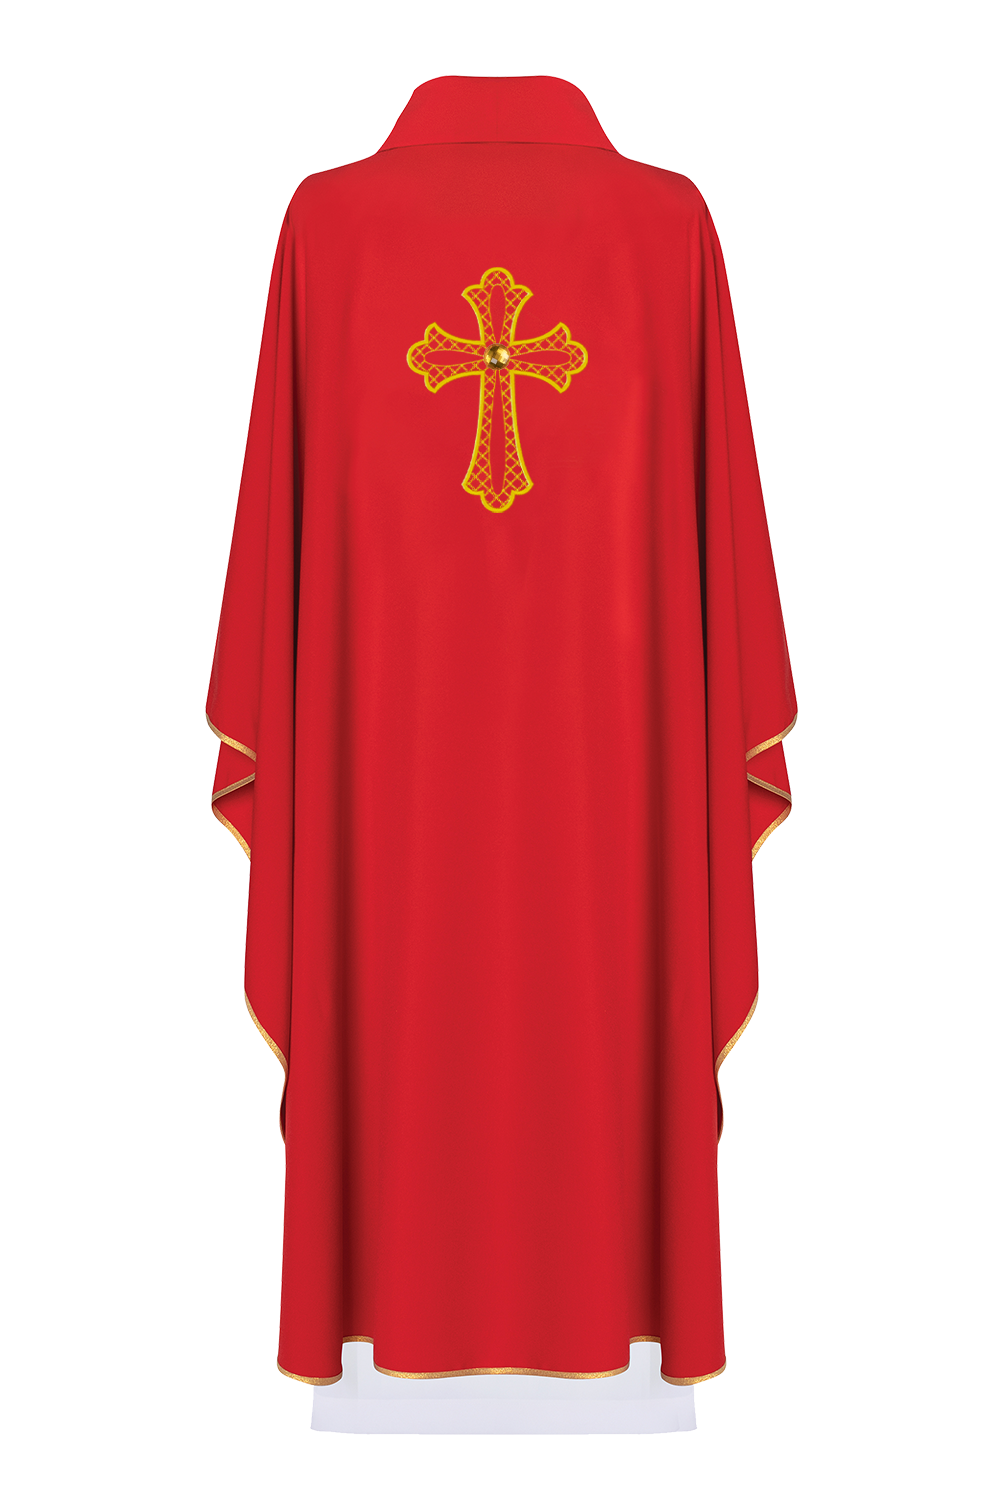 Czerwony ornat haftowany z symbolem krzyża